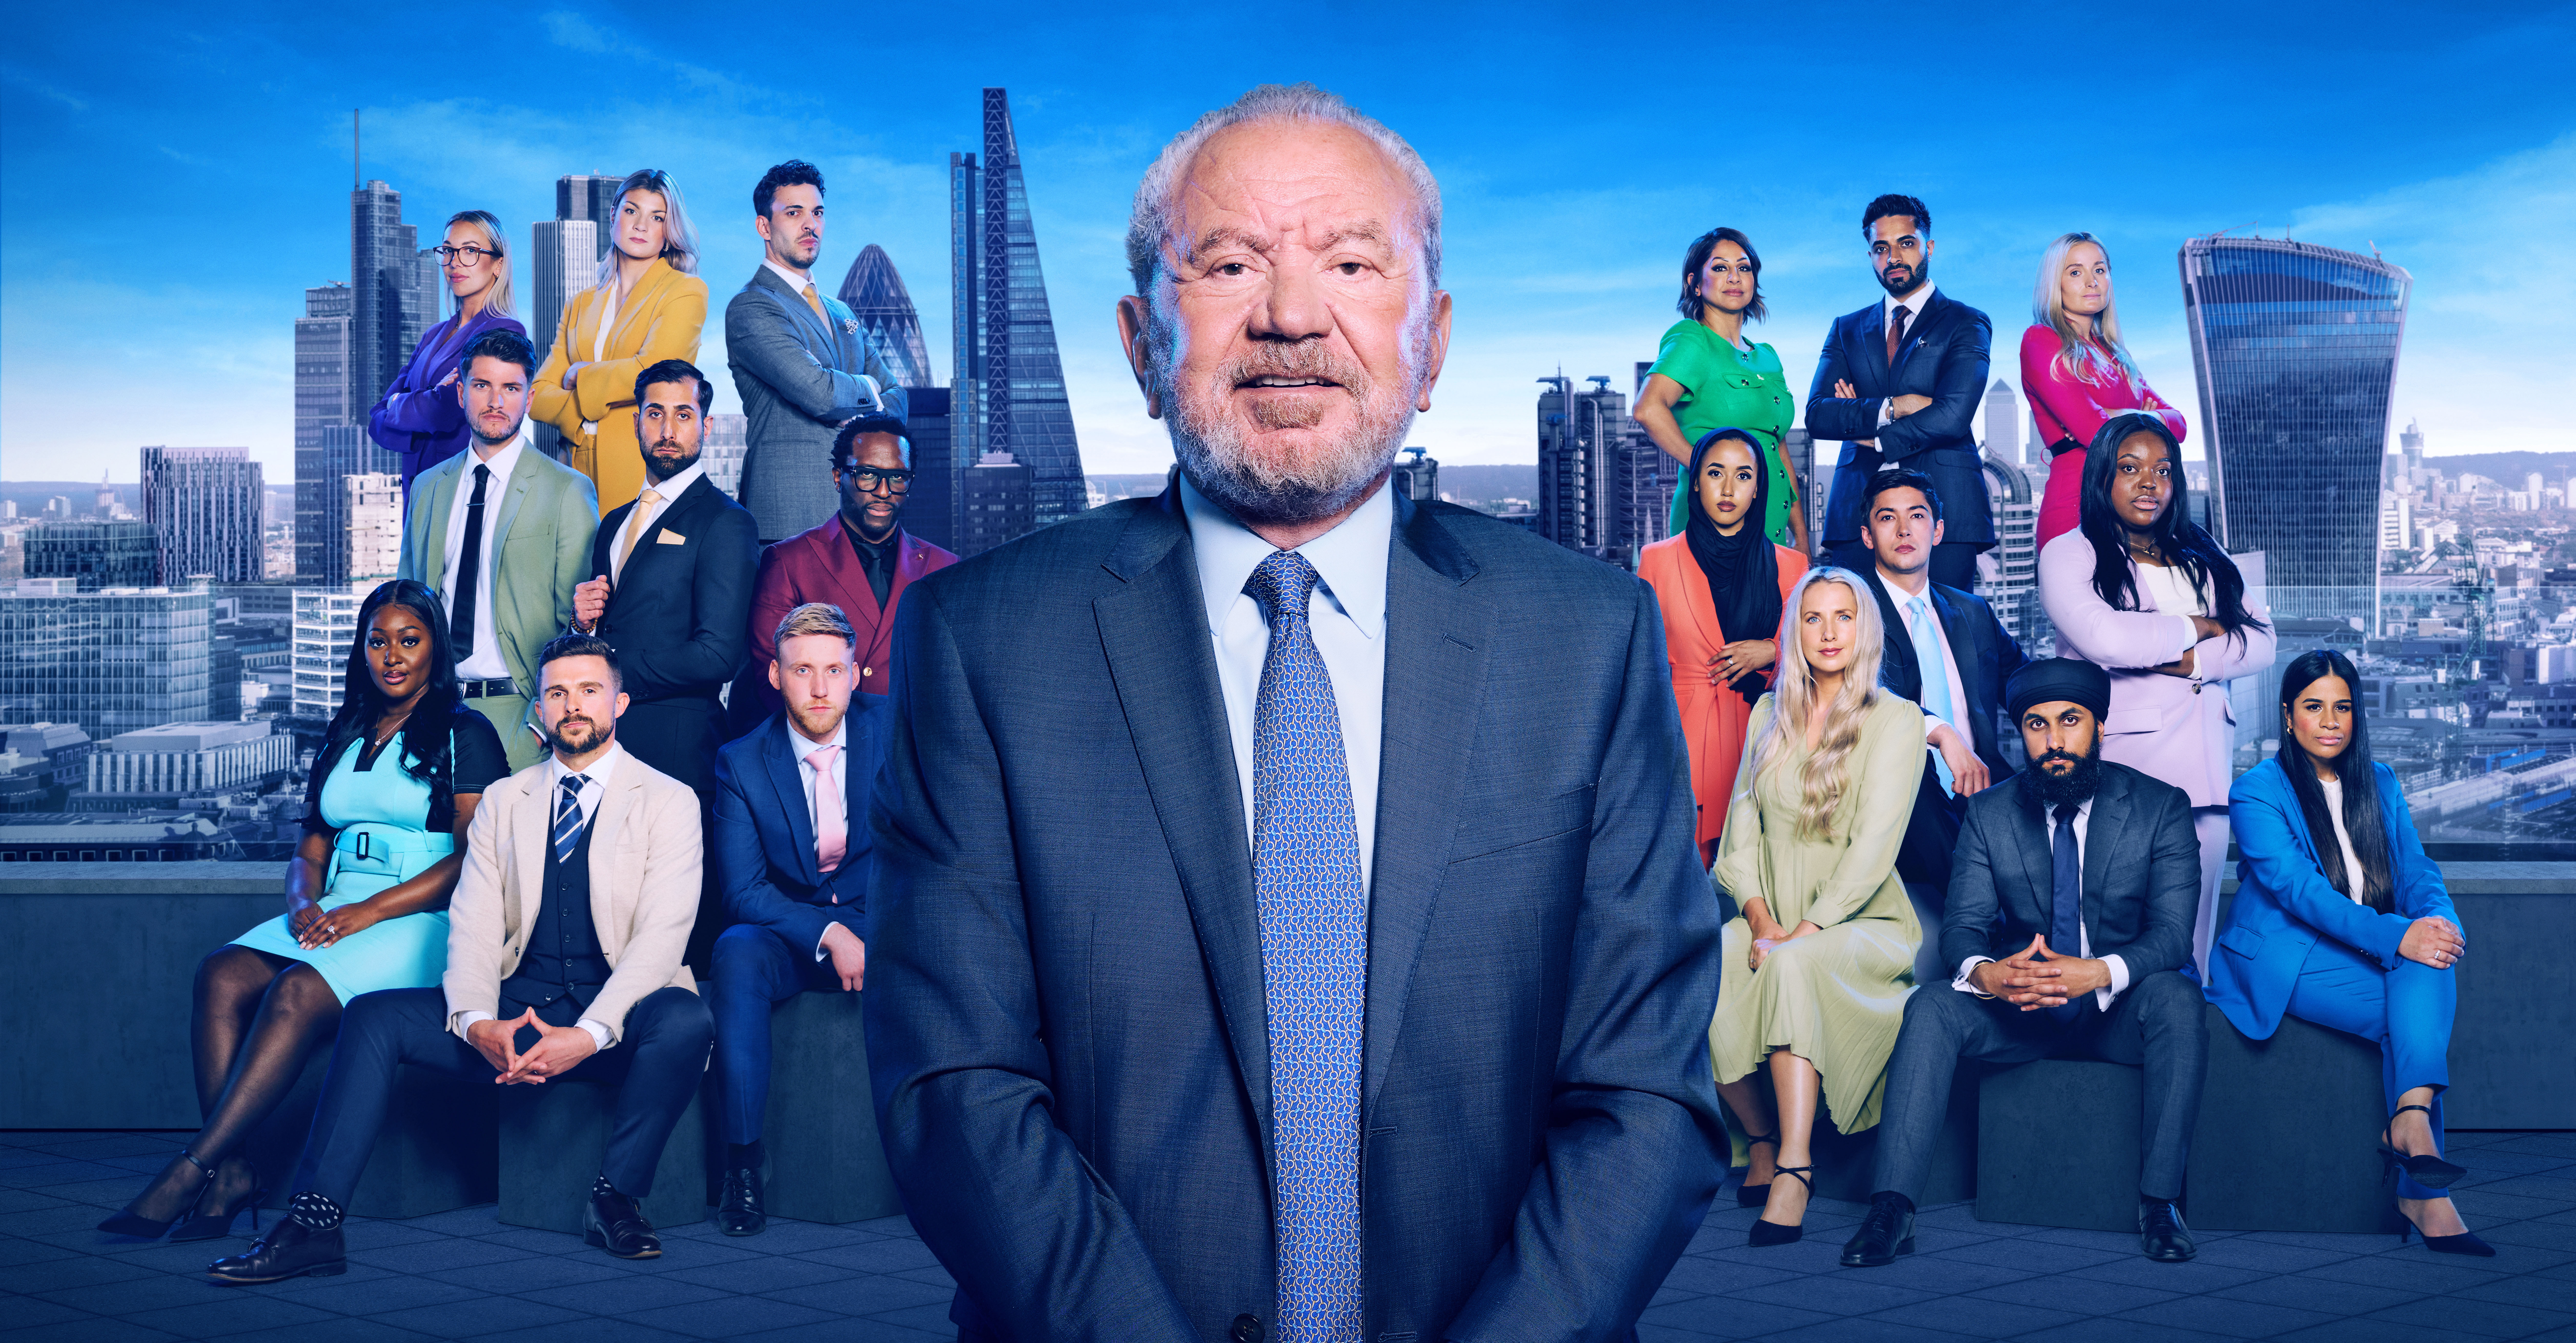 Das Wirtschaftsprogramm BBC One ist seit seiner Einführung im Jahr 2005 ein fester Bestandteil des britischen Reality-TV-Angebots